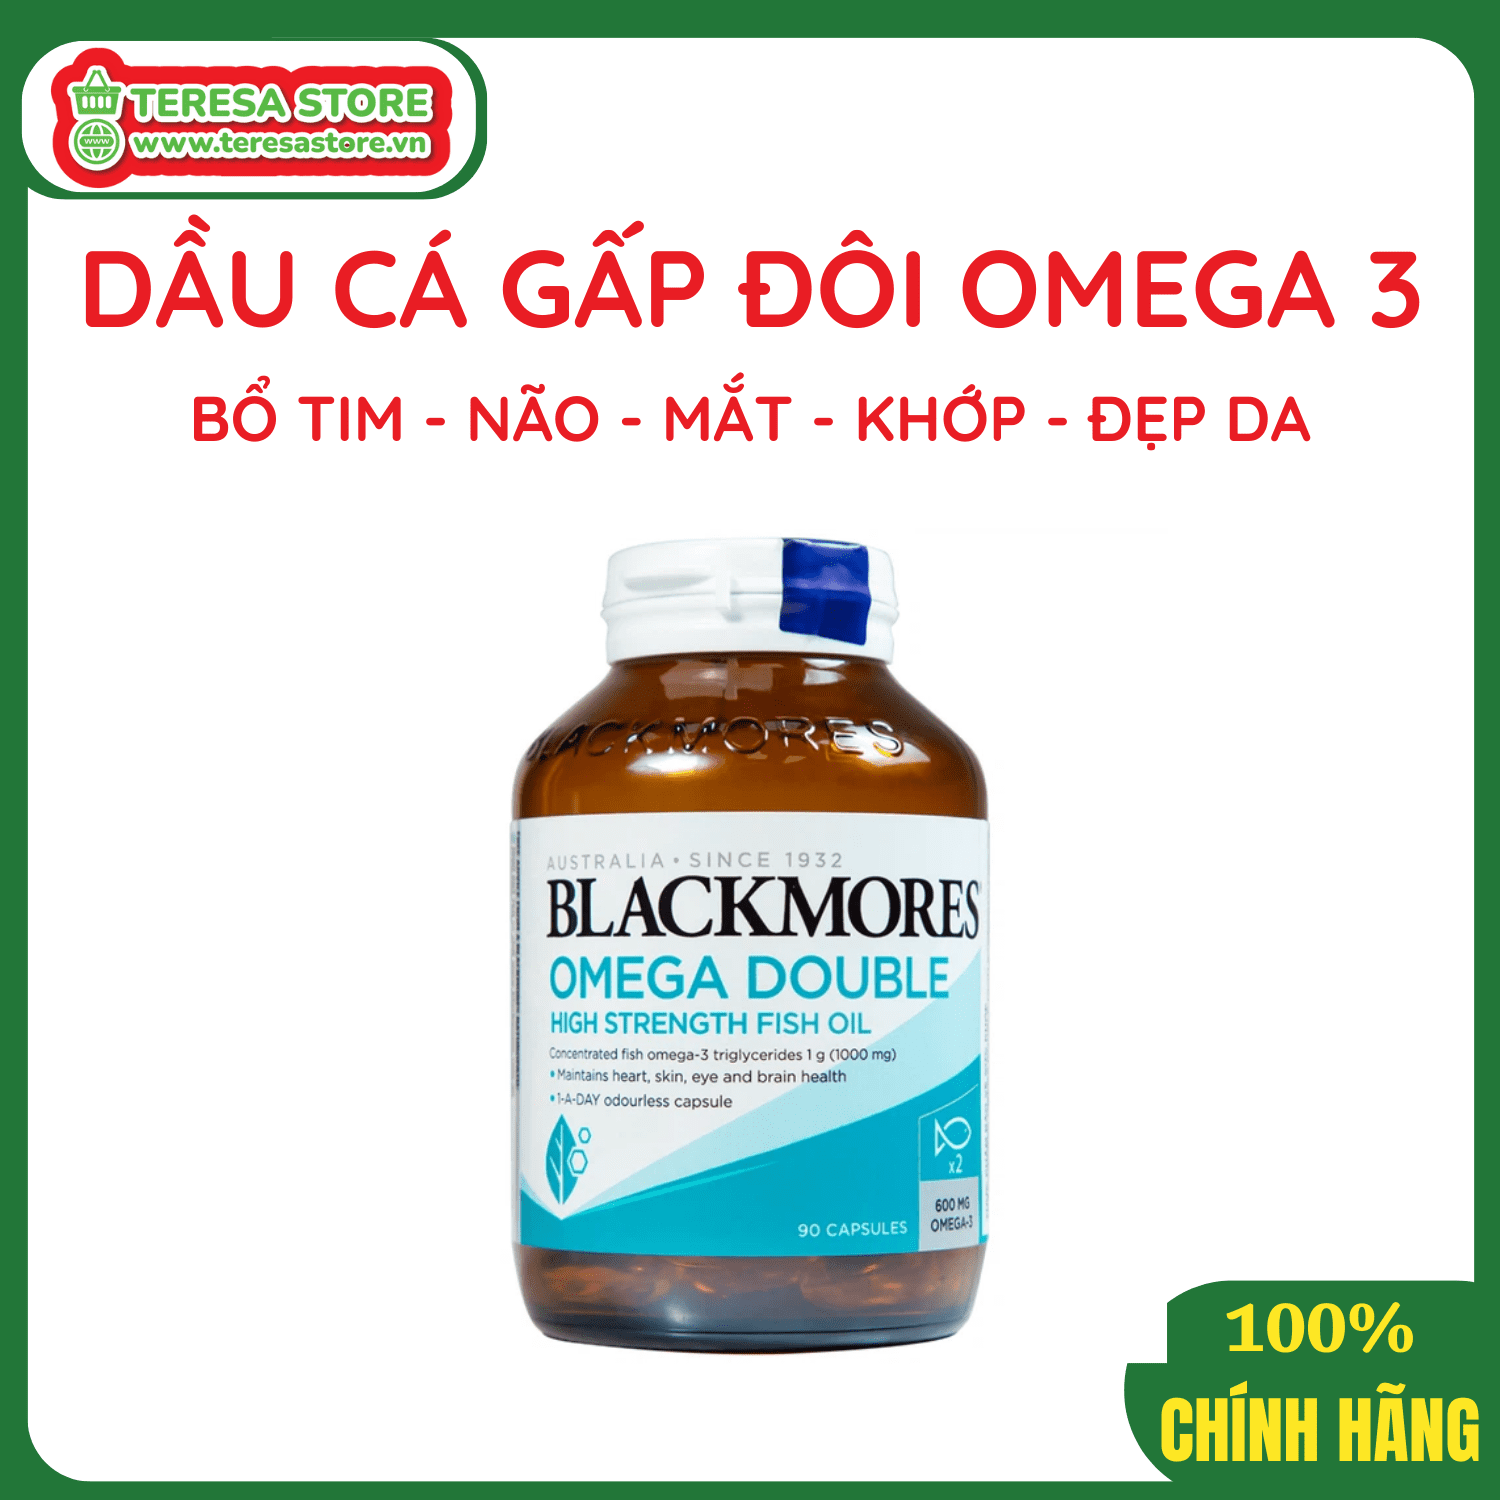 Viên Uống Dầu Cá Omega 3 Bổ Não, Bổ Mắt Blackmores Omega Double High Strength Fish Oil Hộp 90 viên